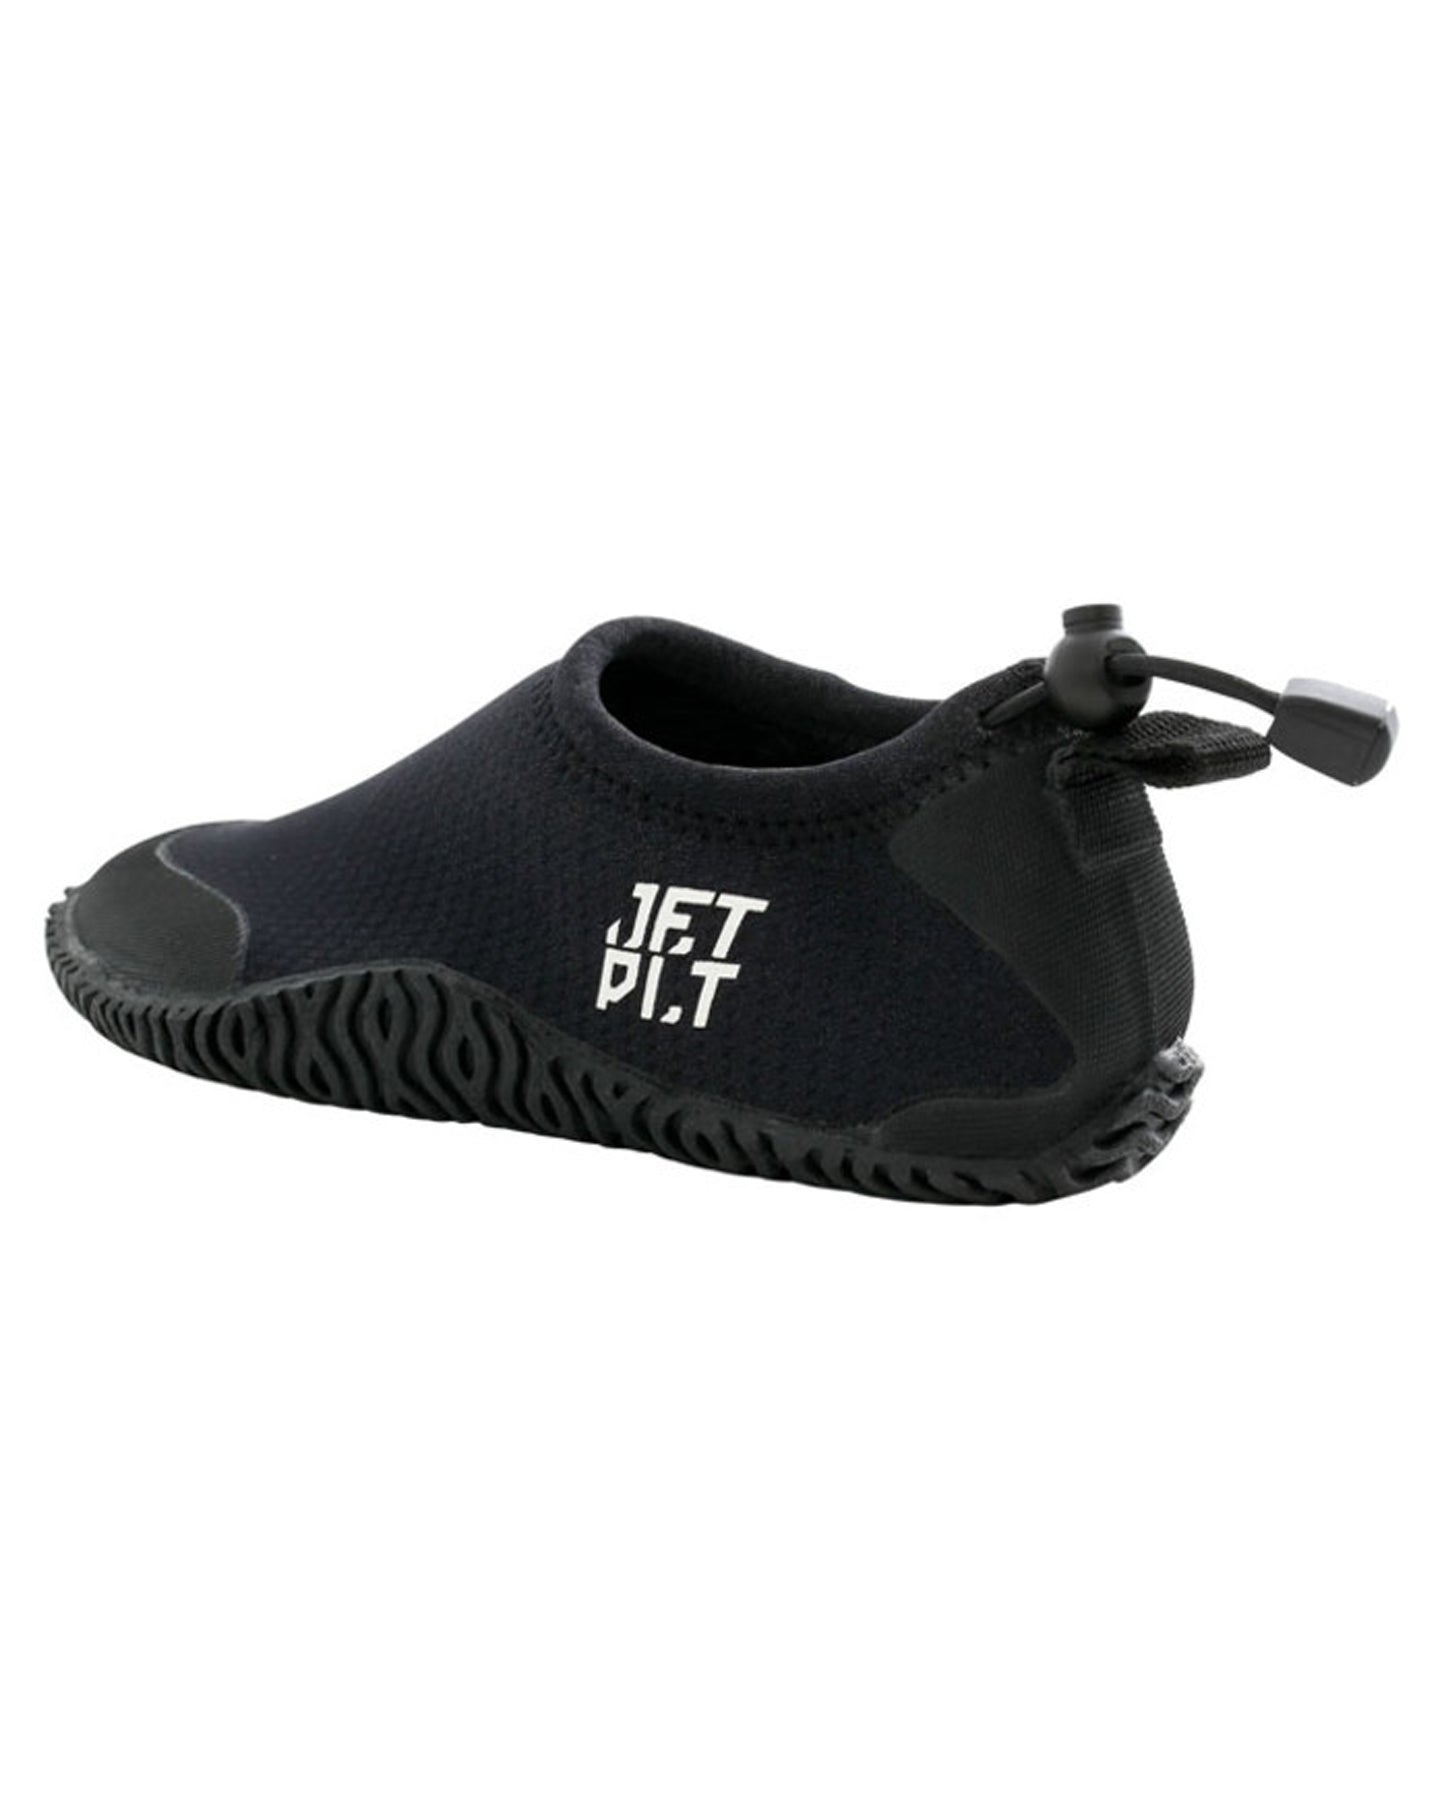 Jetpilot Hydro Shoe - Black - 2023 Water Shoes - Trojan Wake Ski Snow